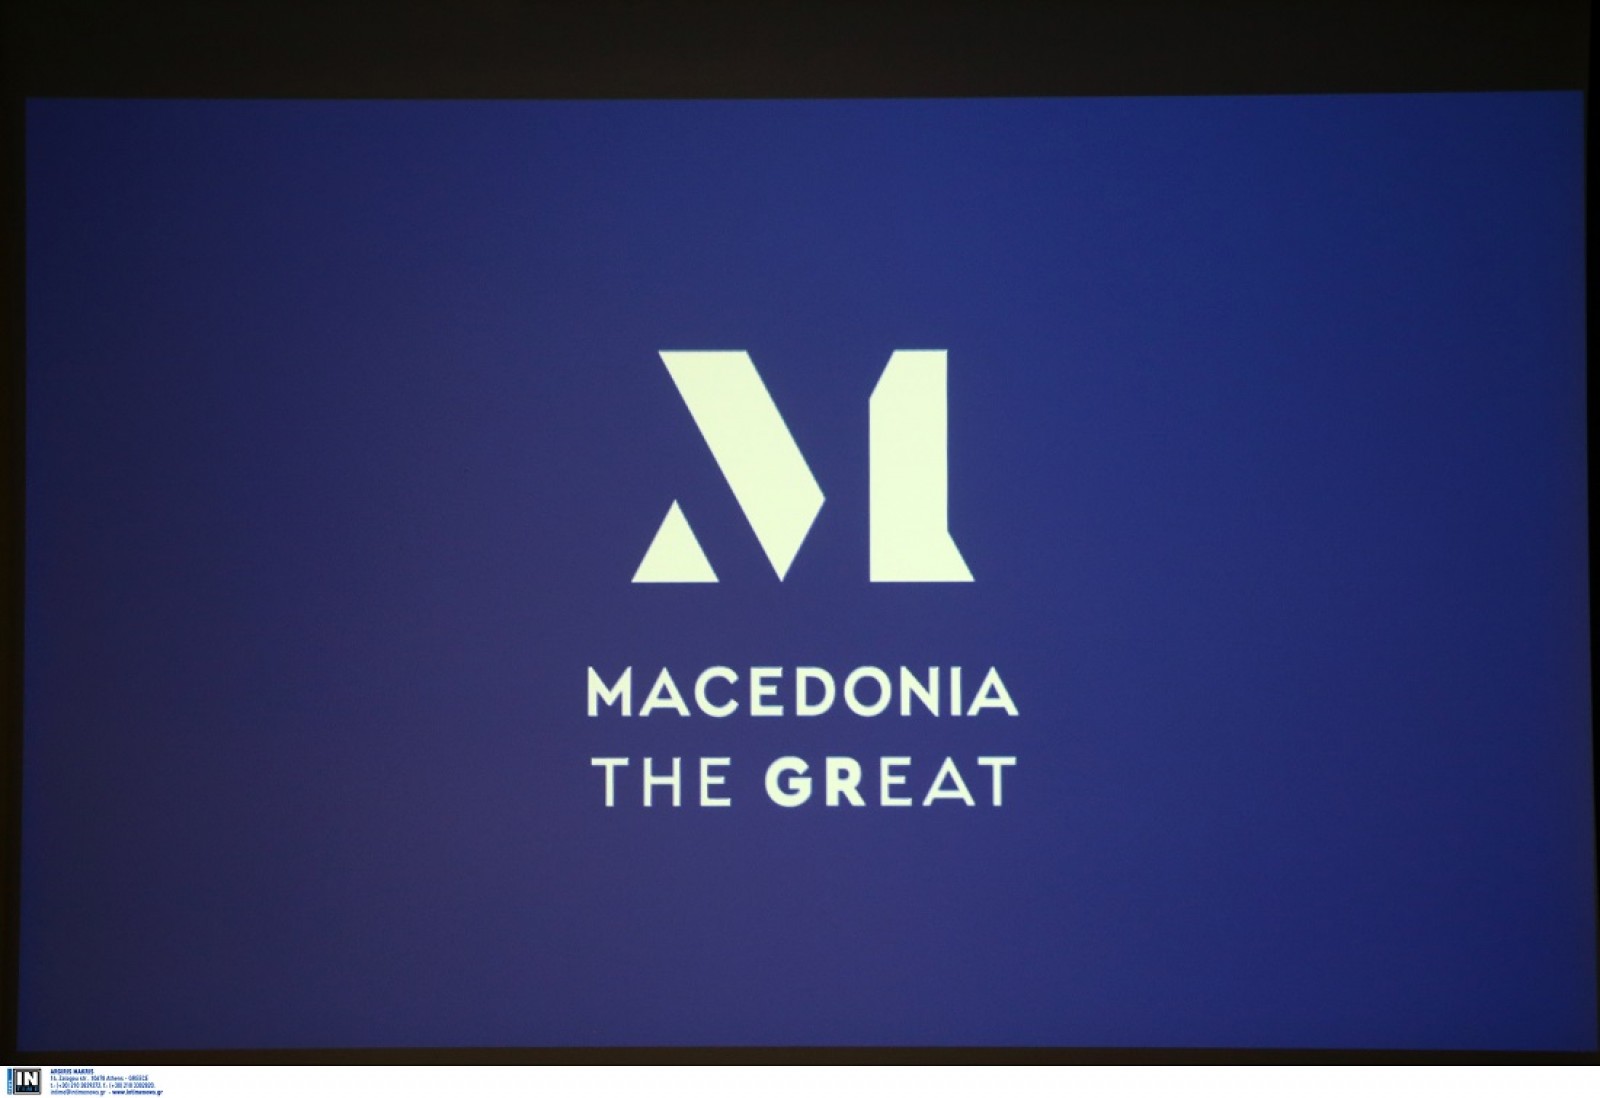 Μακεδονικά προϊόντα: παρουσιάστηκε το νέο σήμα